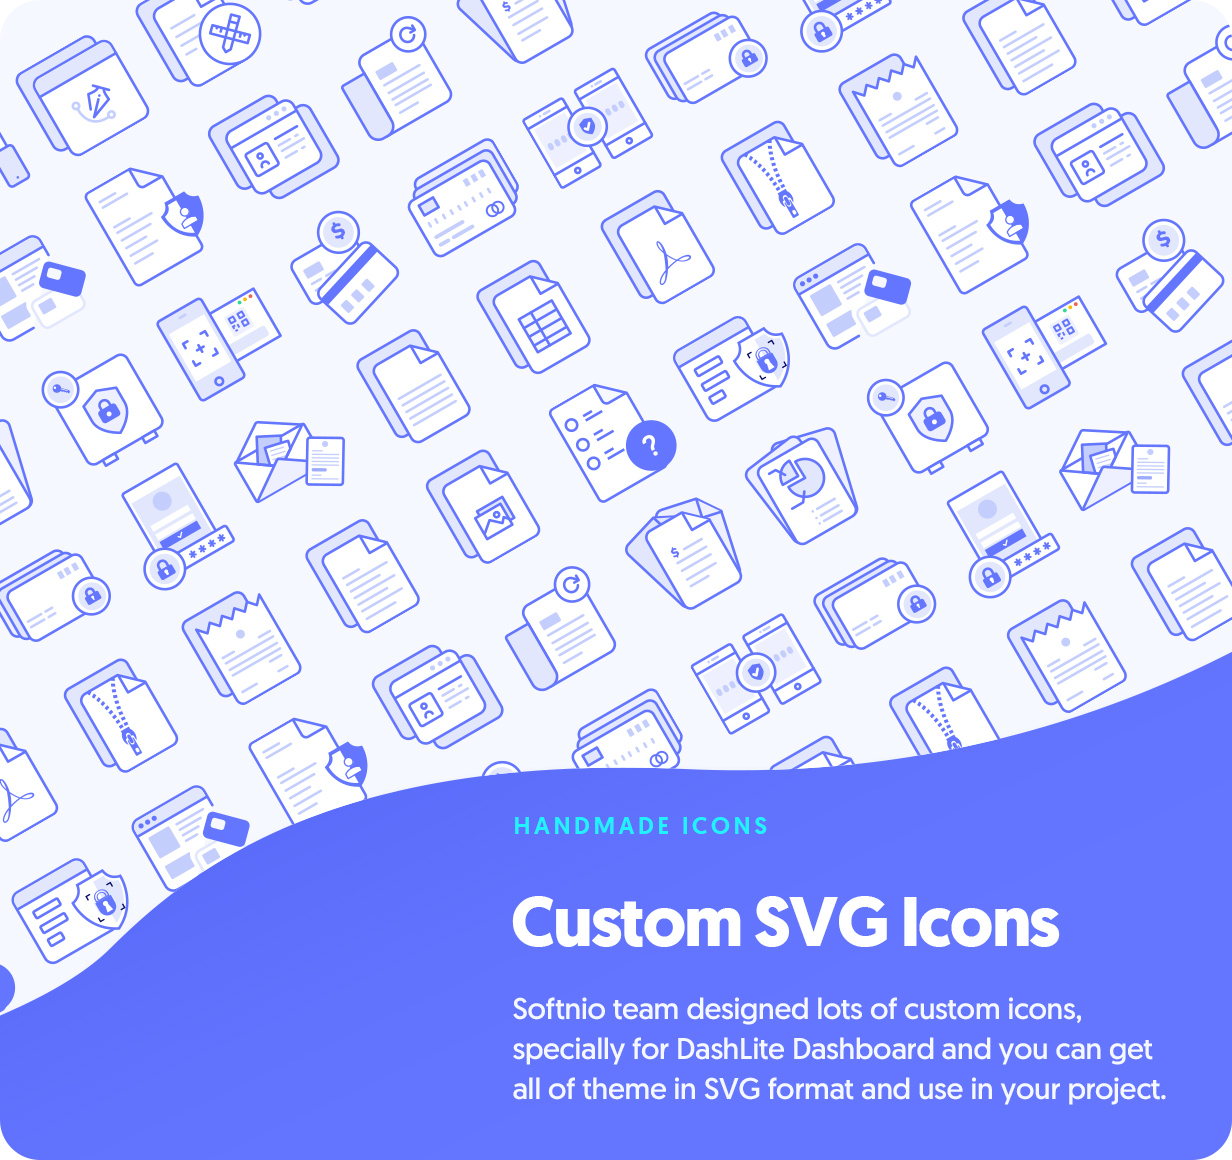 DashLite - Iconos SVG hechos a mano personalizados